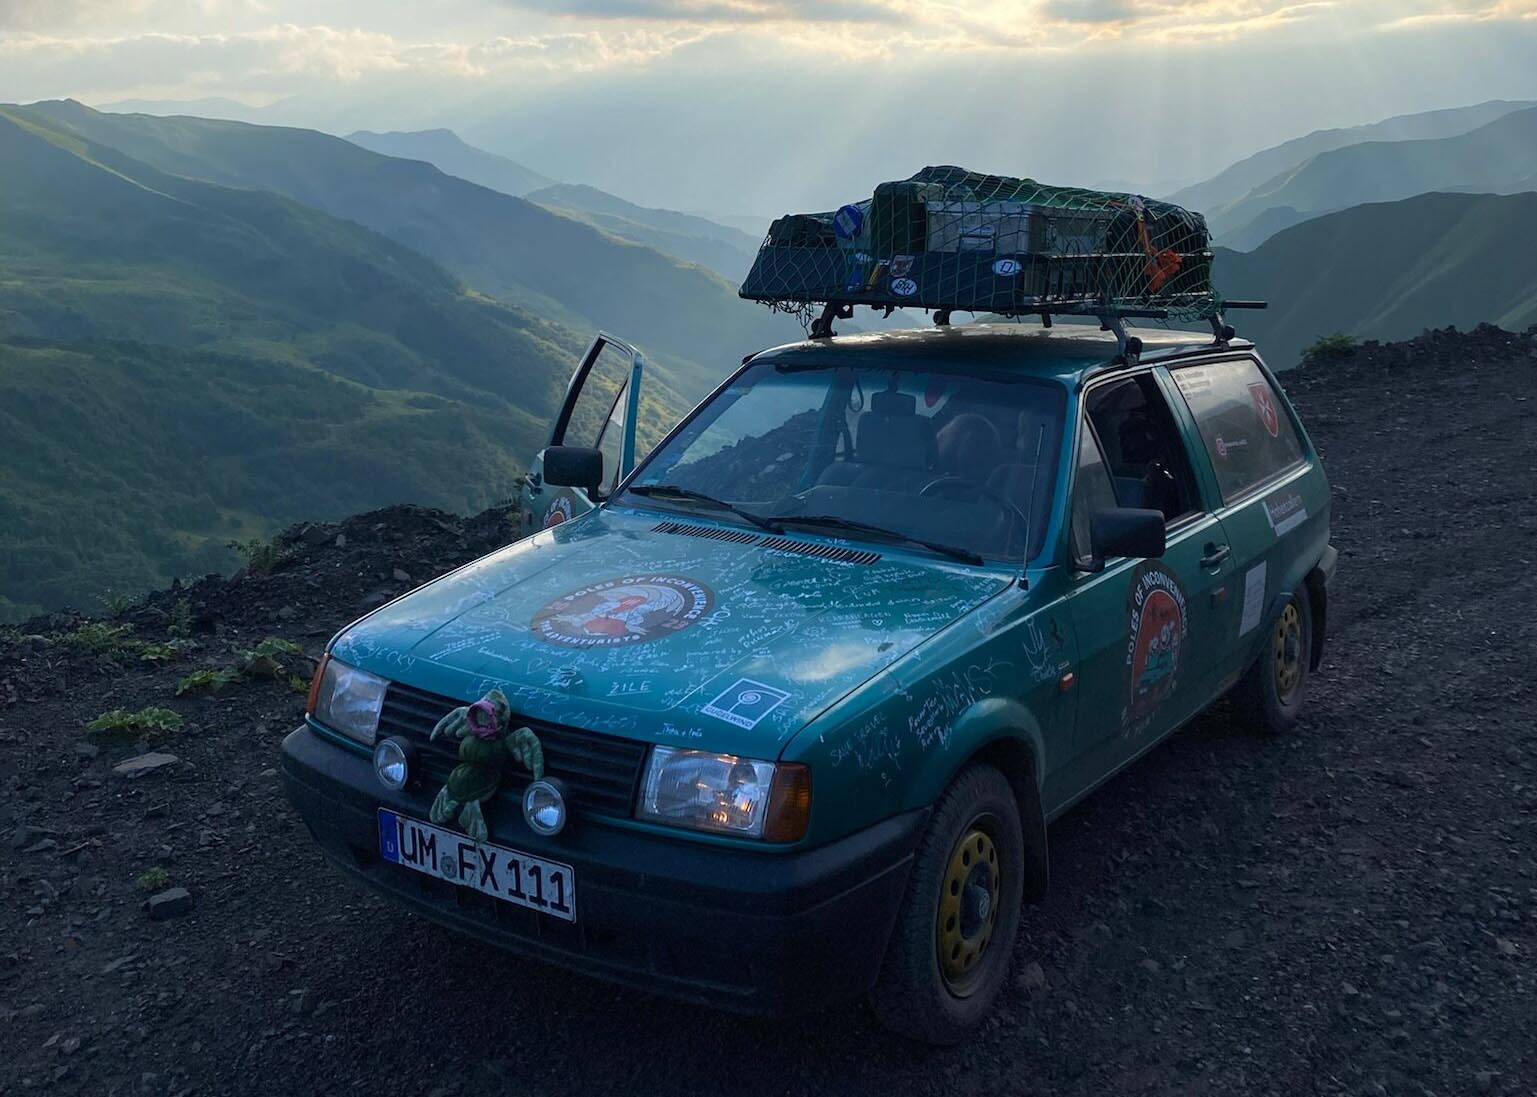 Georgien an der russischen Grenze: Der Pole of Inconvenience befand sich im wunderschönen Tal um Shatili. Foxy hatte sich wieder einmal im schweren Gelände bewiesen und das Team Ninja Turtles verlässlich nach Tbilisi gebracht.